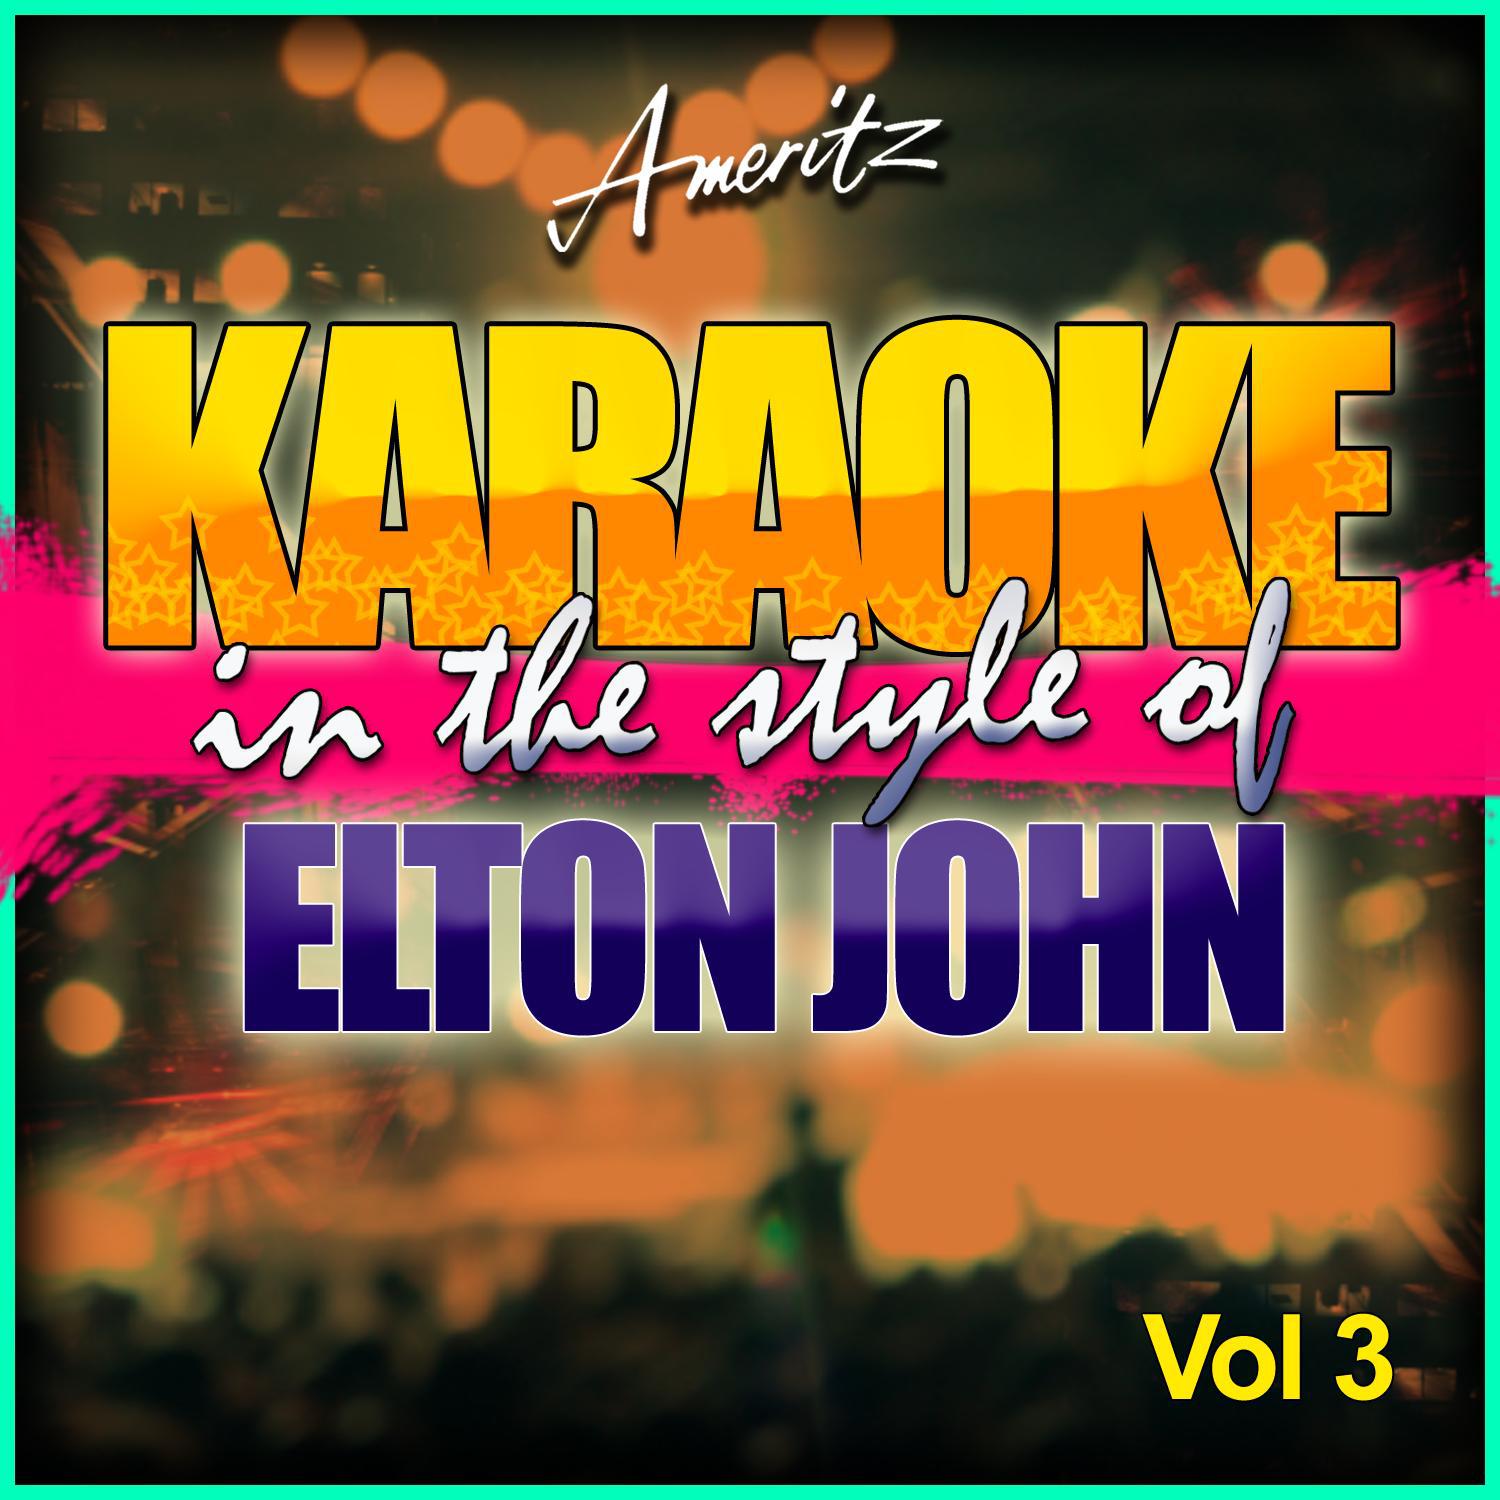 Karaoke - Elton John Vol. 3